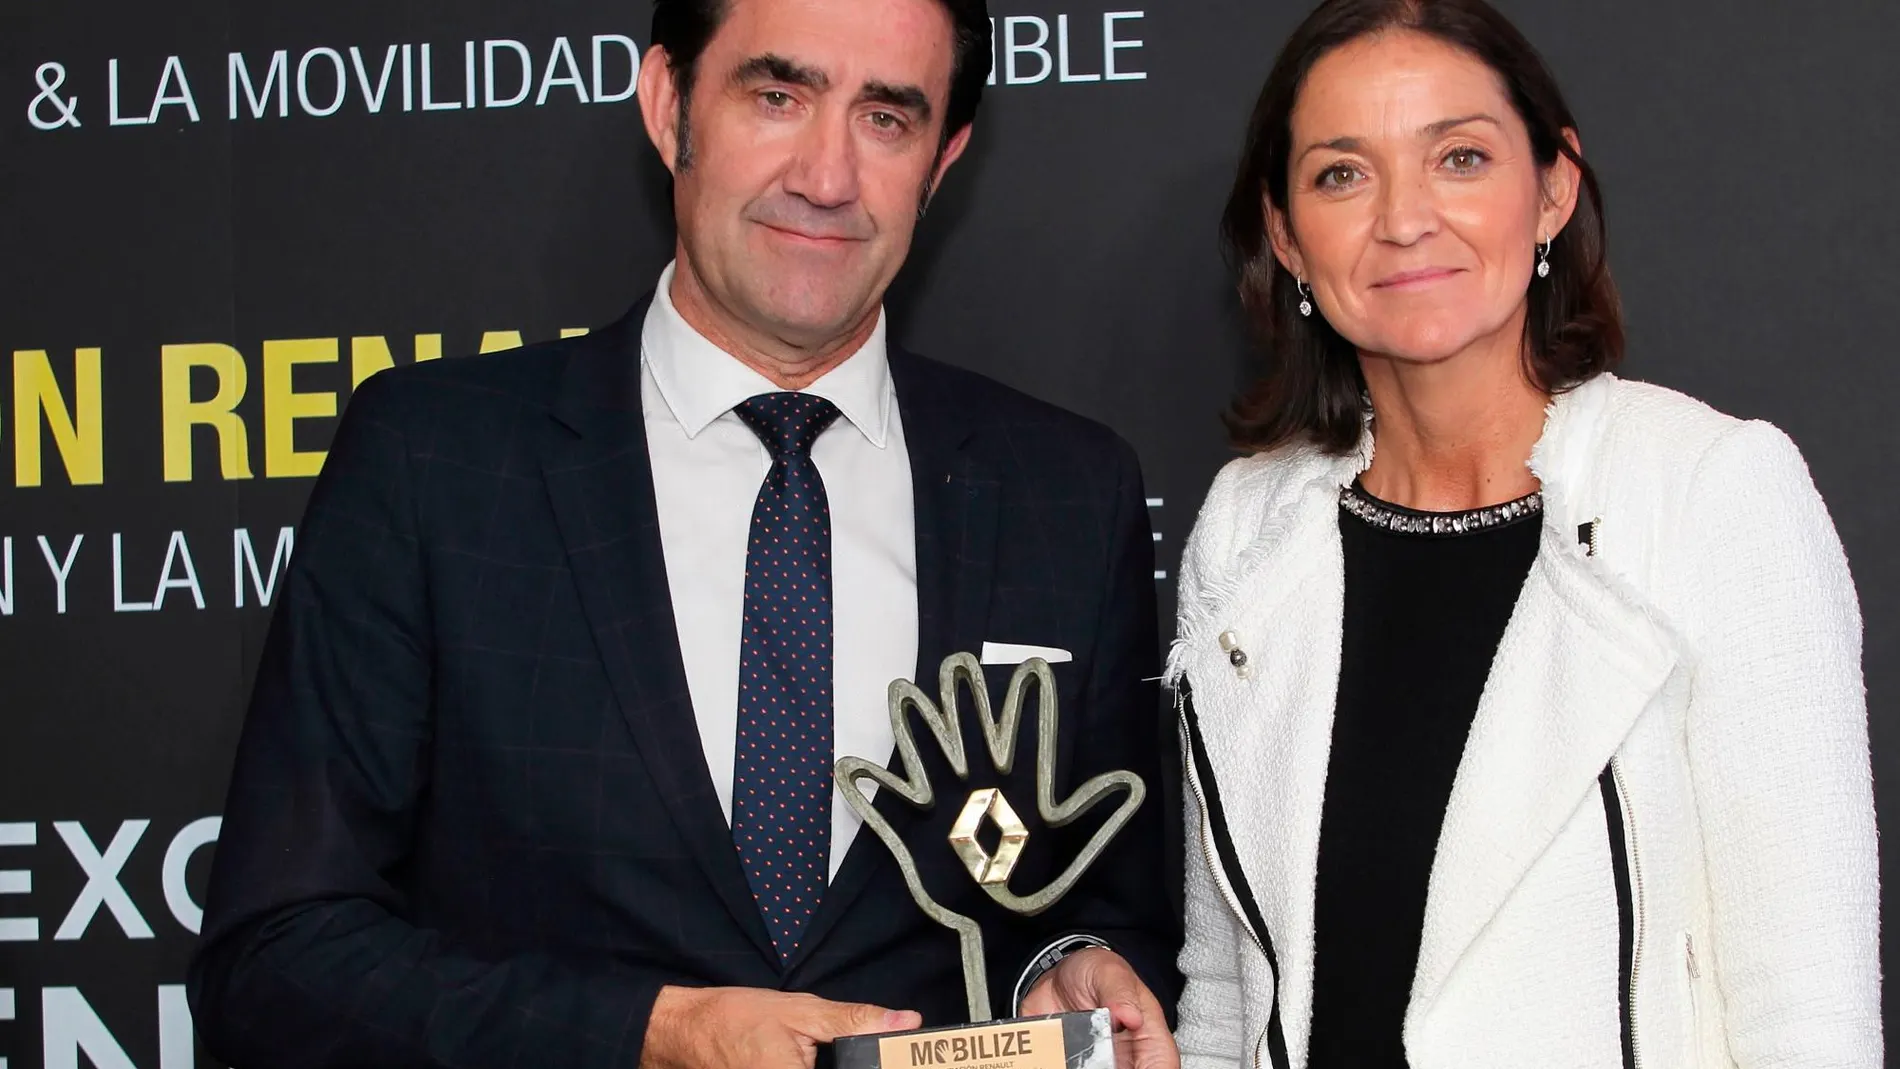 El consejero Suárez-Quiñons recibe el premio de manos de la ministra Reyes Maroto